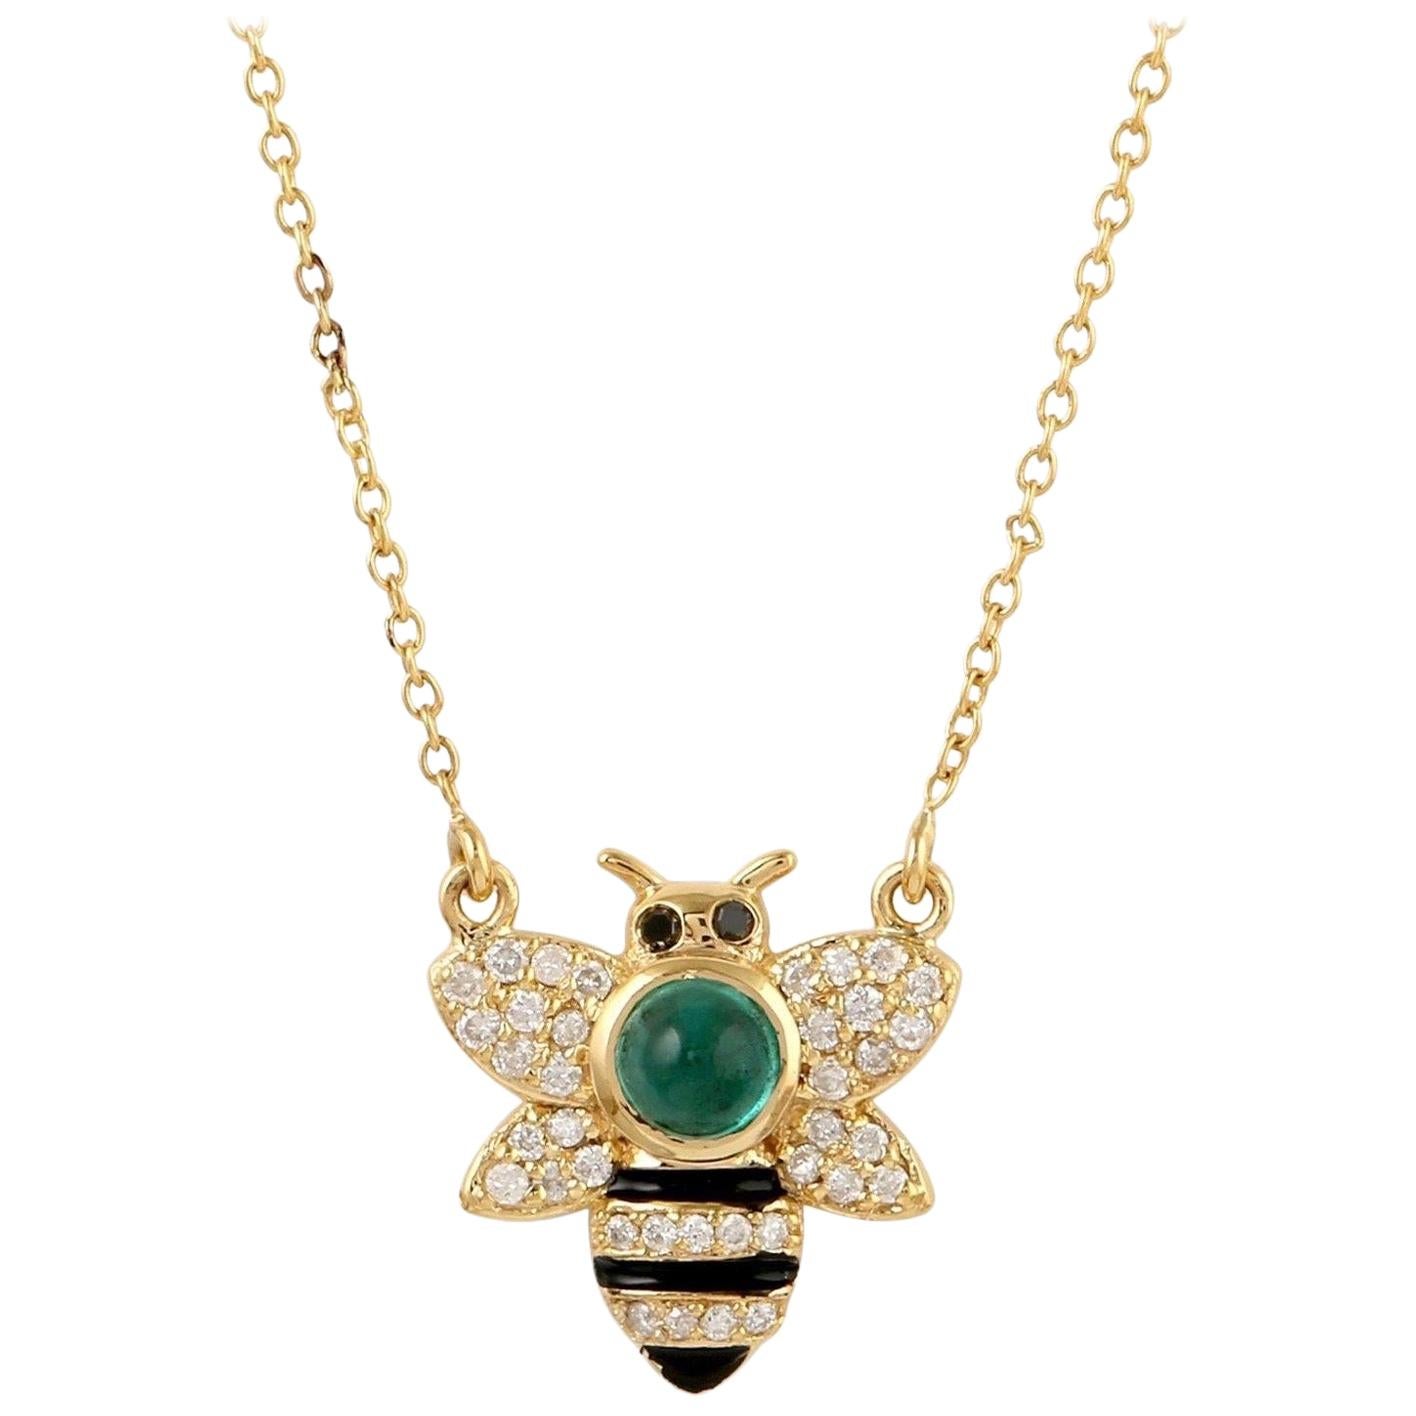 Collier pendentif bourdon en or 18 carats avec émail, émeraudes et diamants